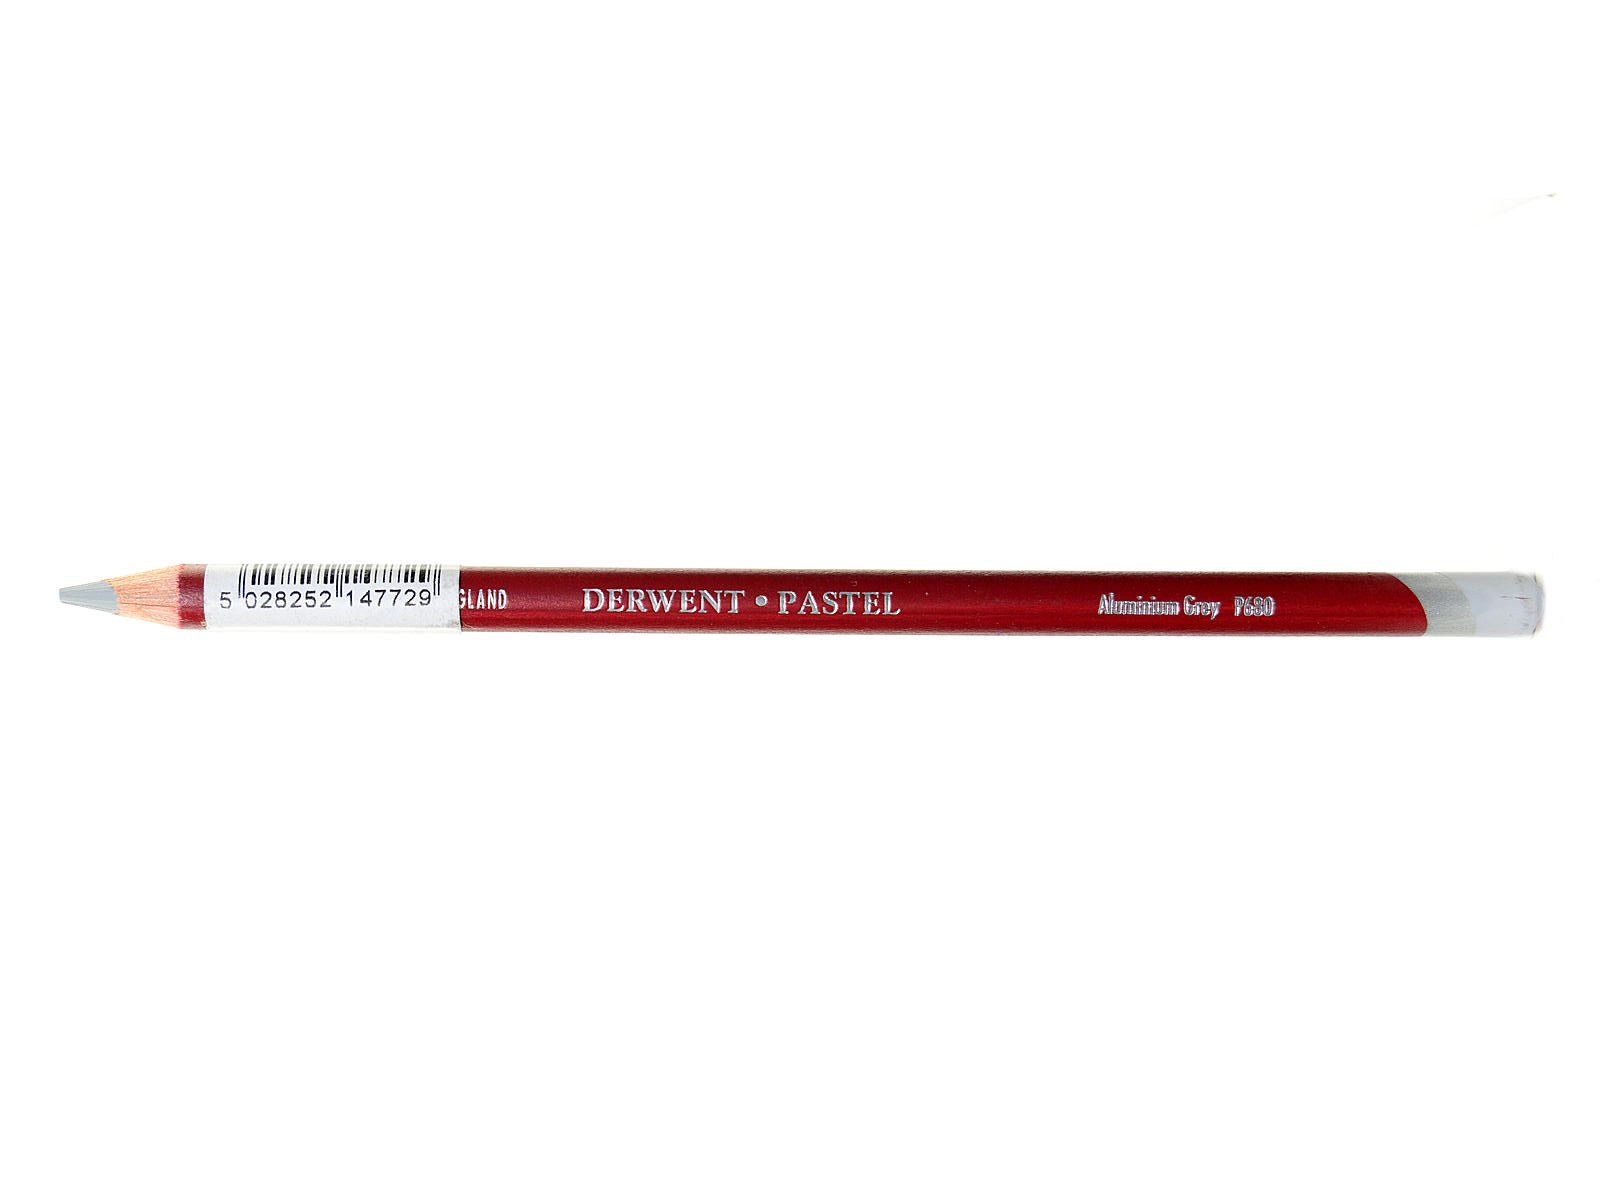 Derwent Pastel Pencil - P680 Aluminum Gray